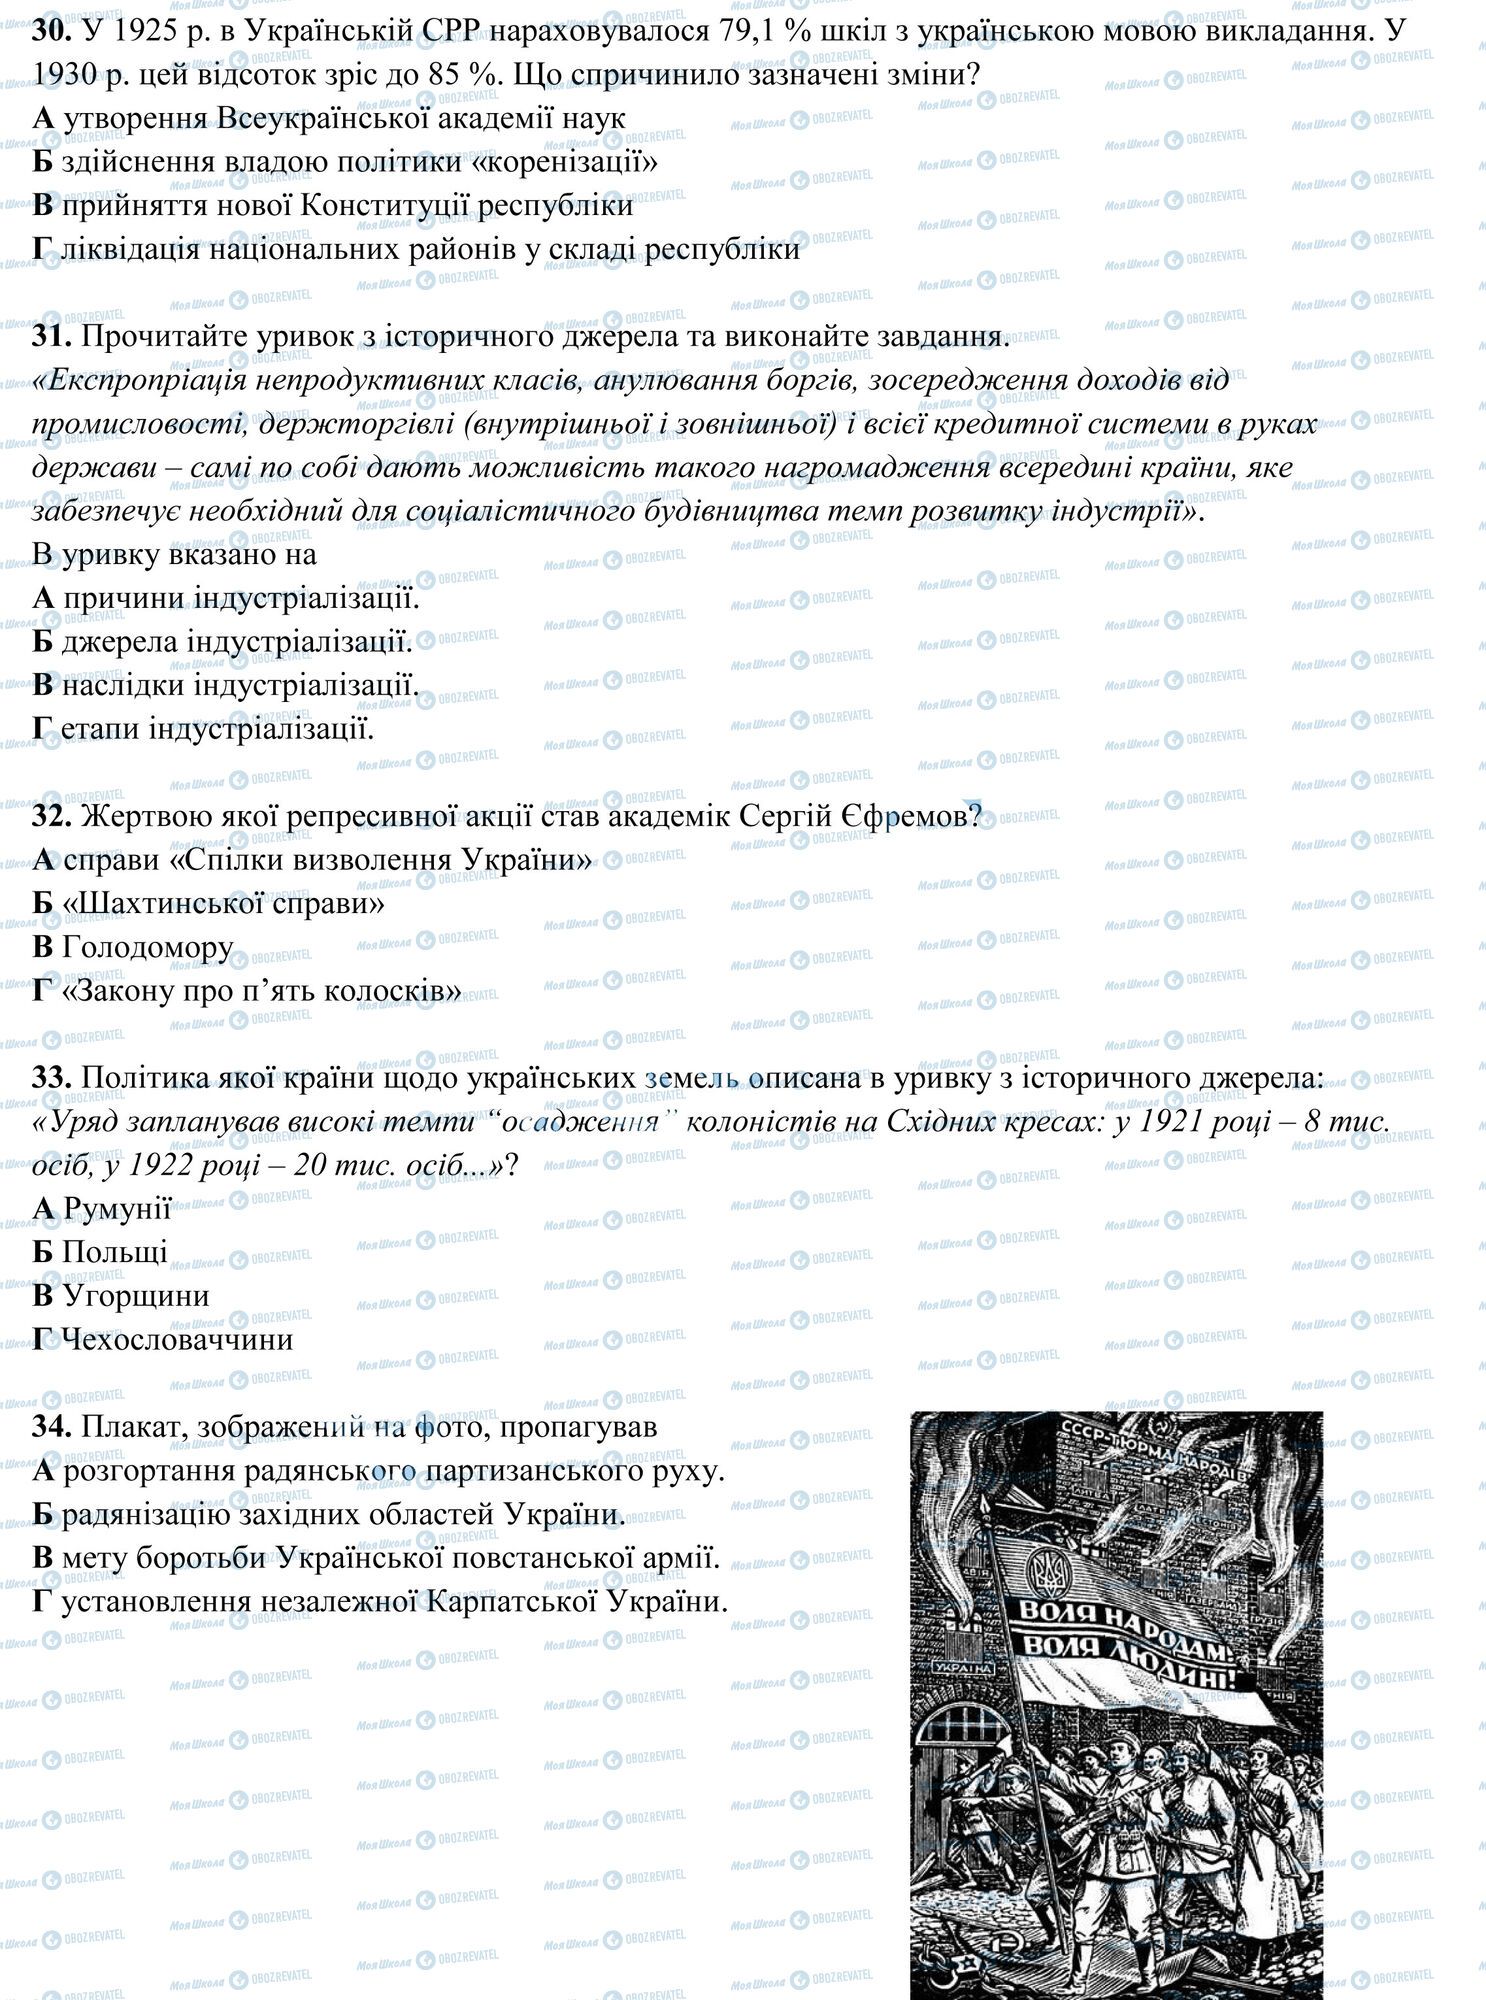 ЗНО История Украины 11 класс страница 7